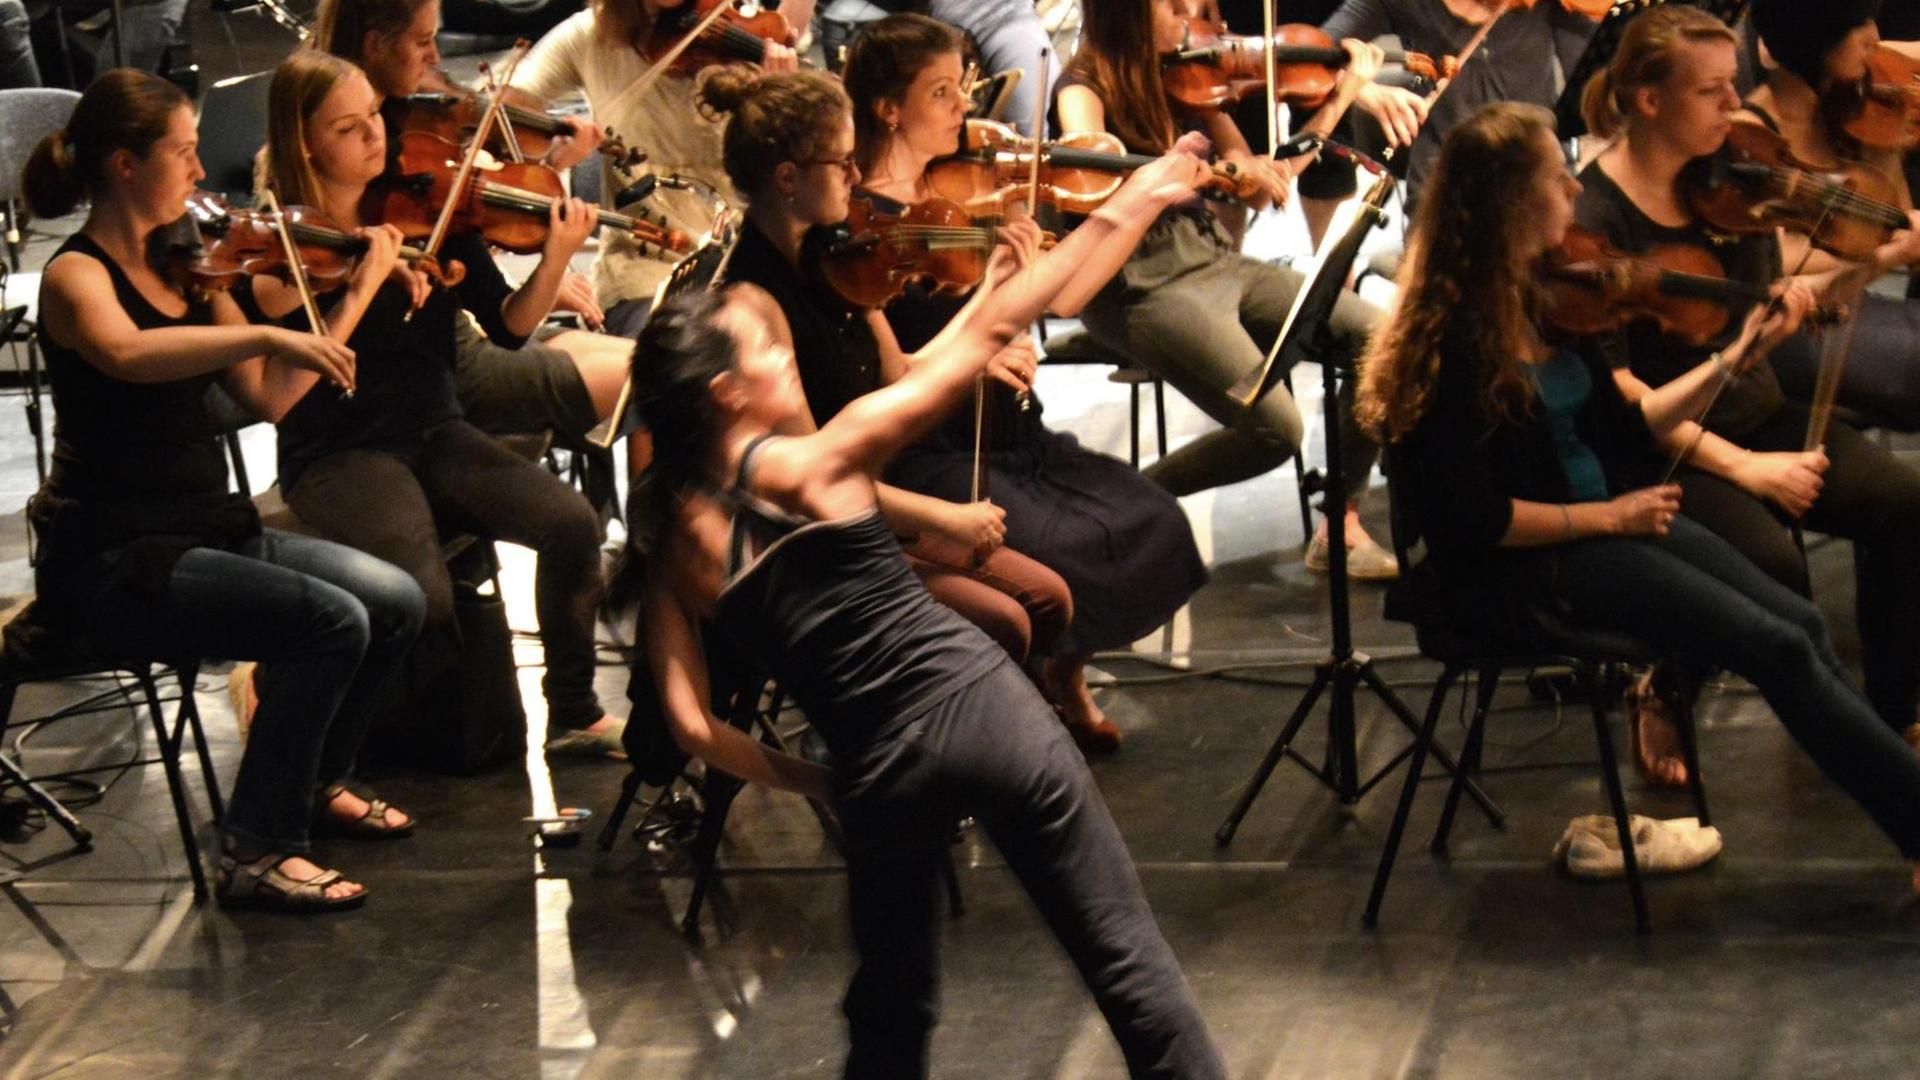 Probenfoto von "Un/Ruhe" - einem Musikprojekt der Jungen Dt. Philharmonie mit Sasha Waltz & Guests im Rahmen der Internationalen Ferienkurse für Neue Musik in Darmstadt